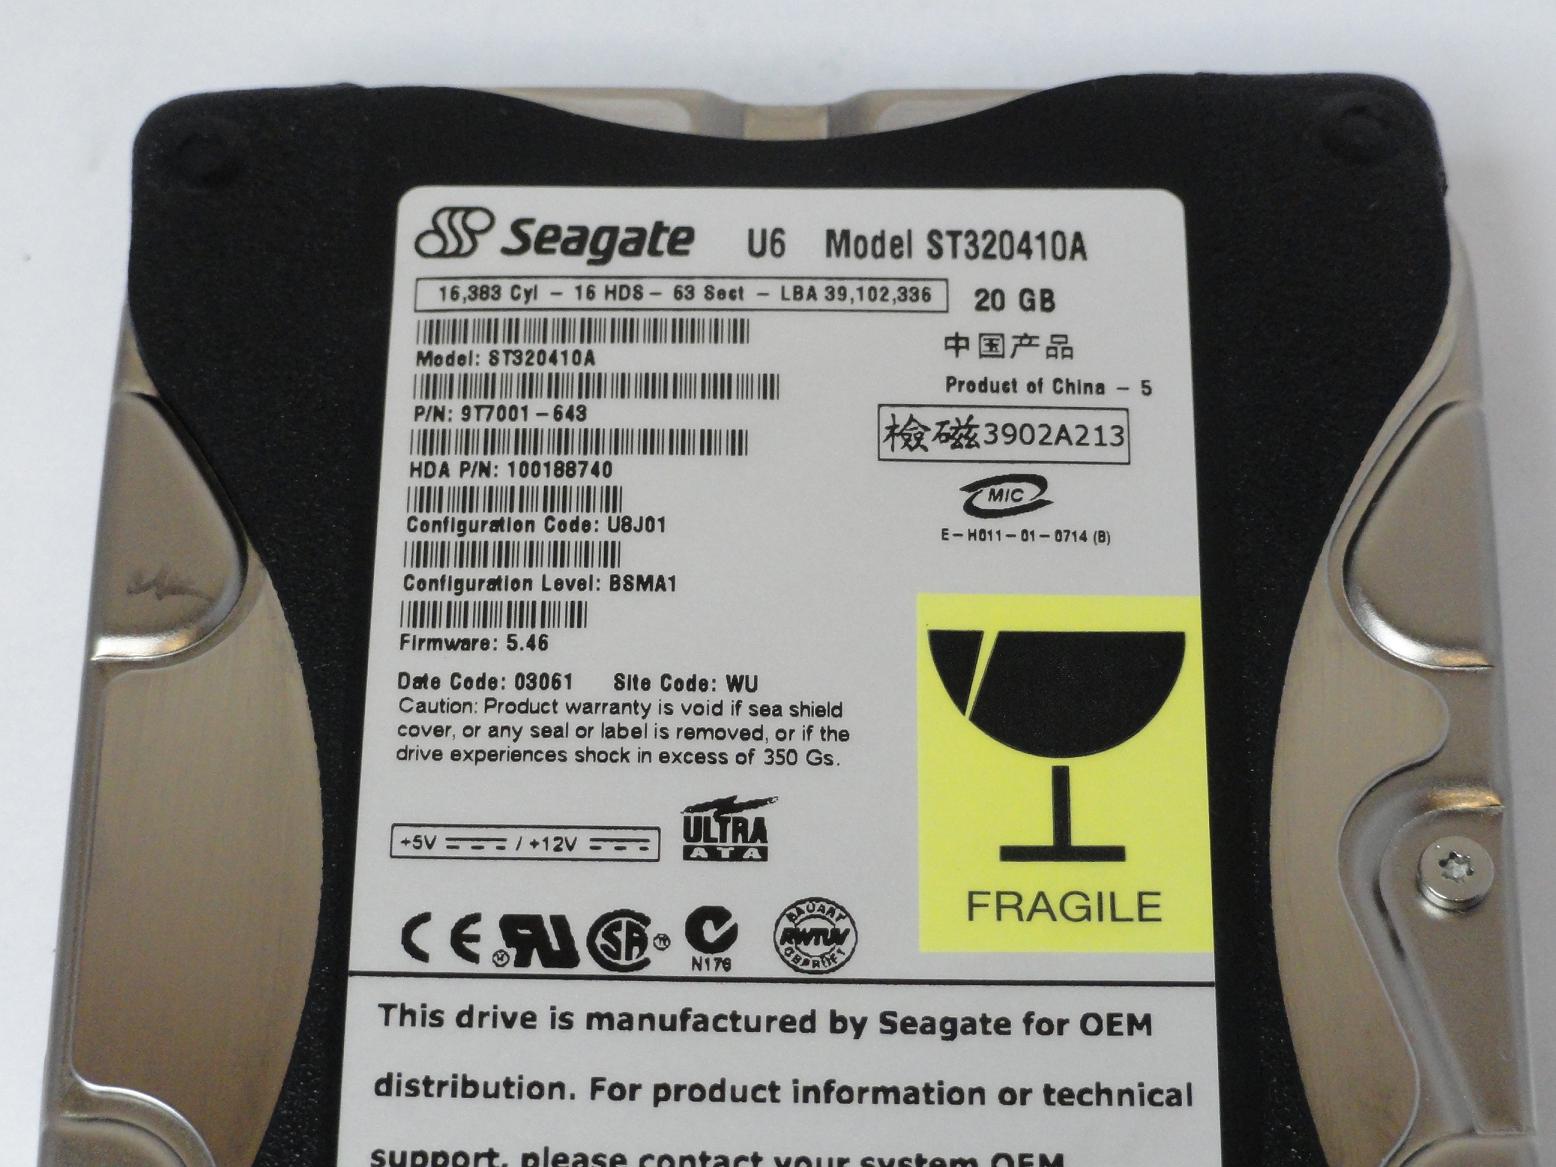 PR06334_9T7001-643_Seagate 20GB IDE 5400rpm 3.5in HDD - Image3